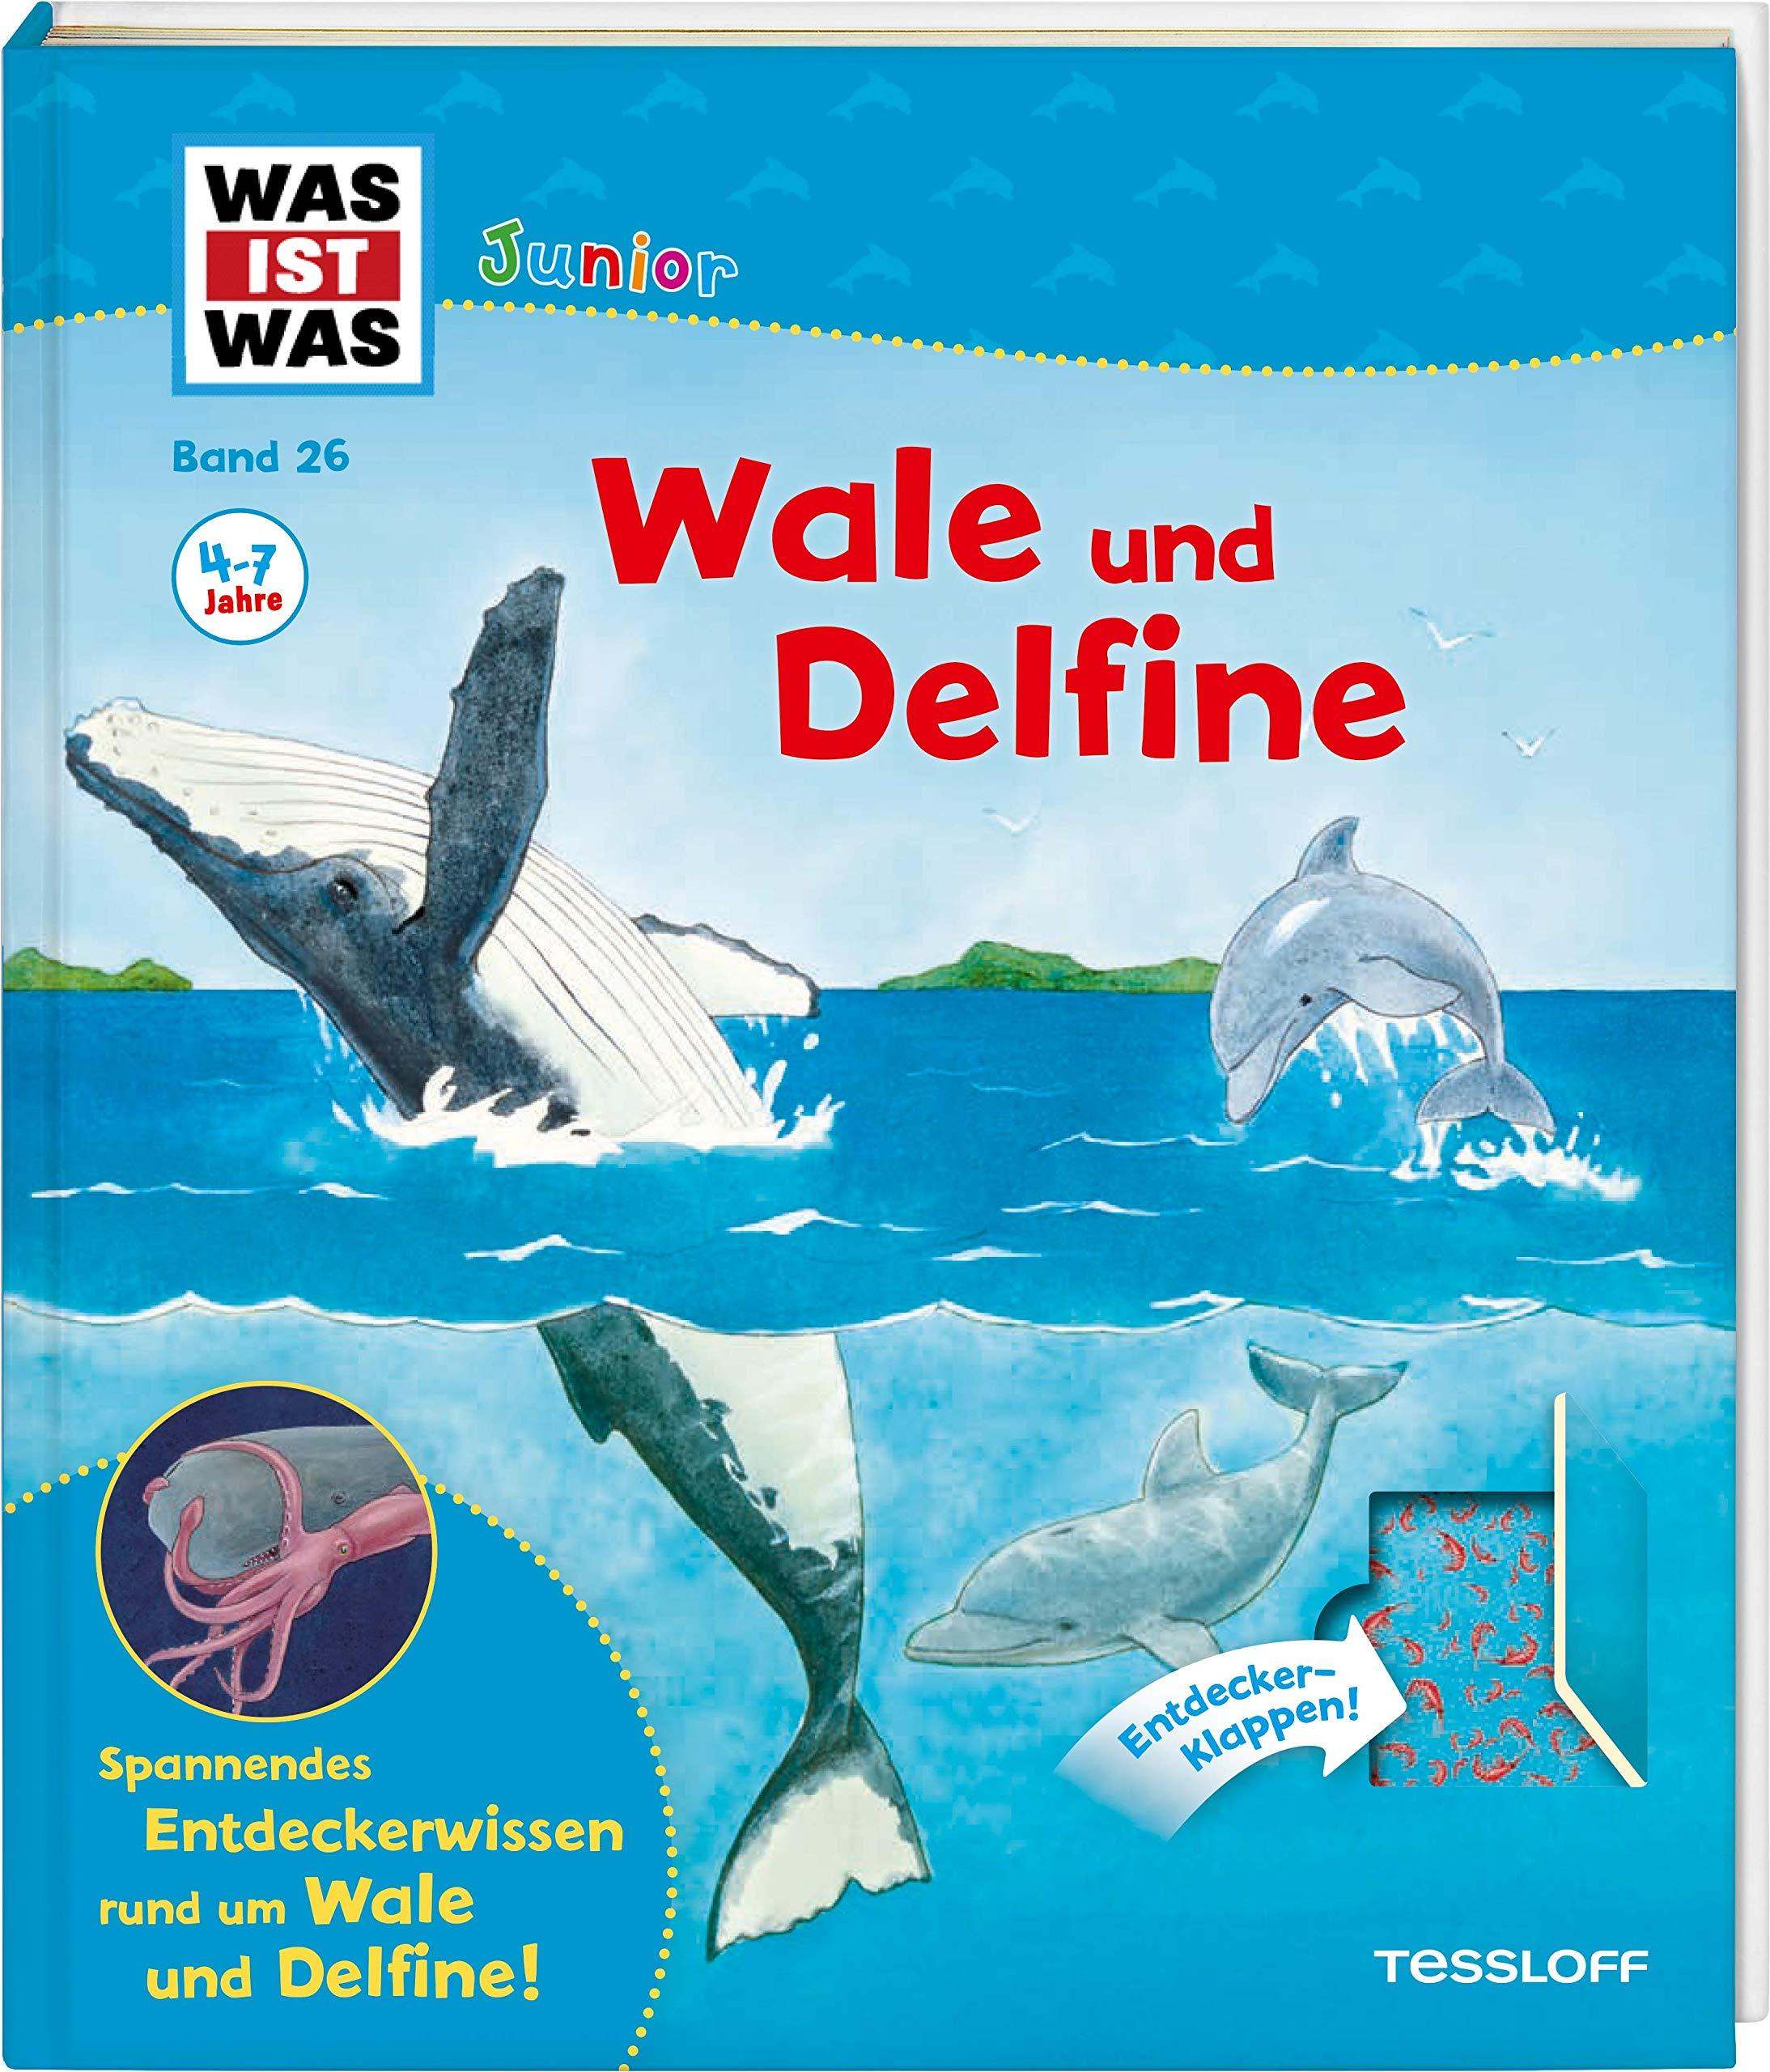 Was ist was: Band 26 Wale und Delfine